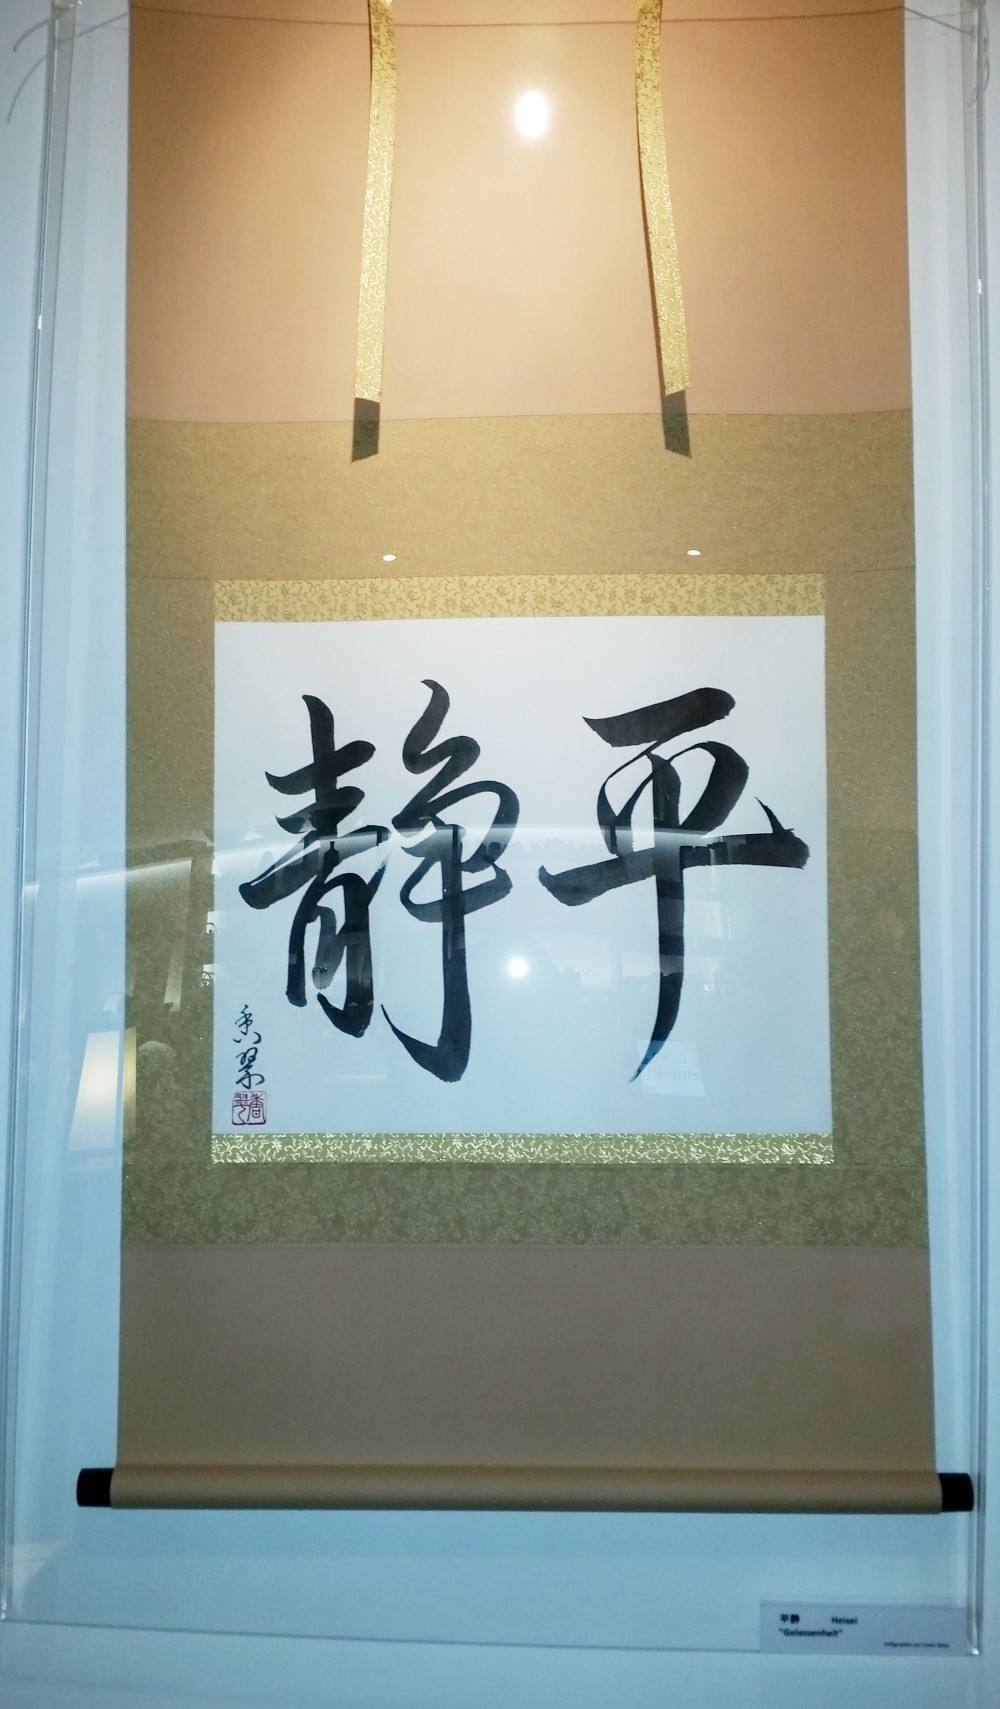 Kalligraphie-Ausstellung: "Heisei"-Gelassenheit - Sakai - Taste of Japan - Wien